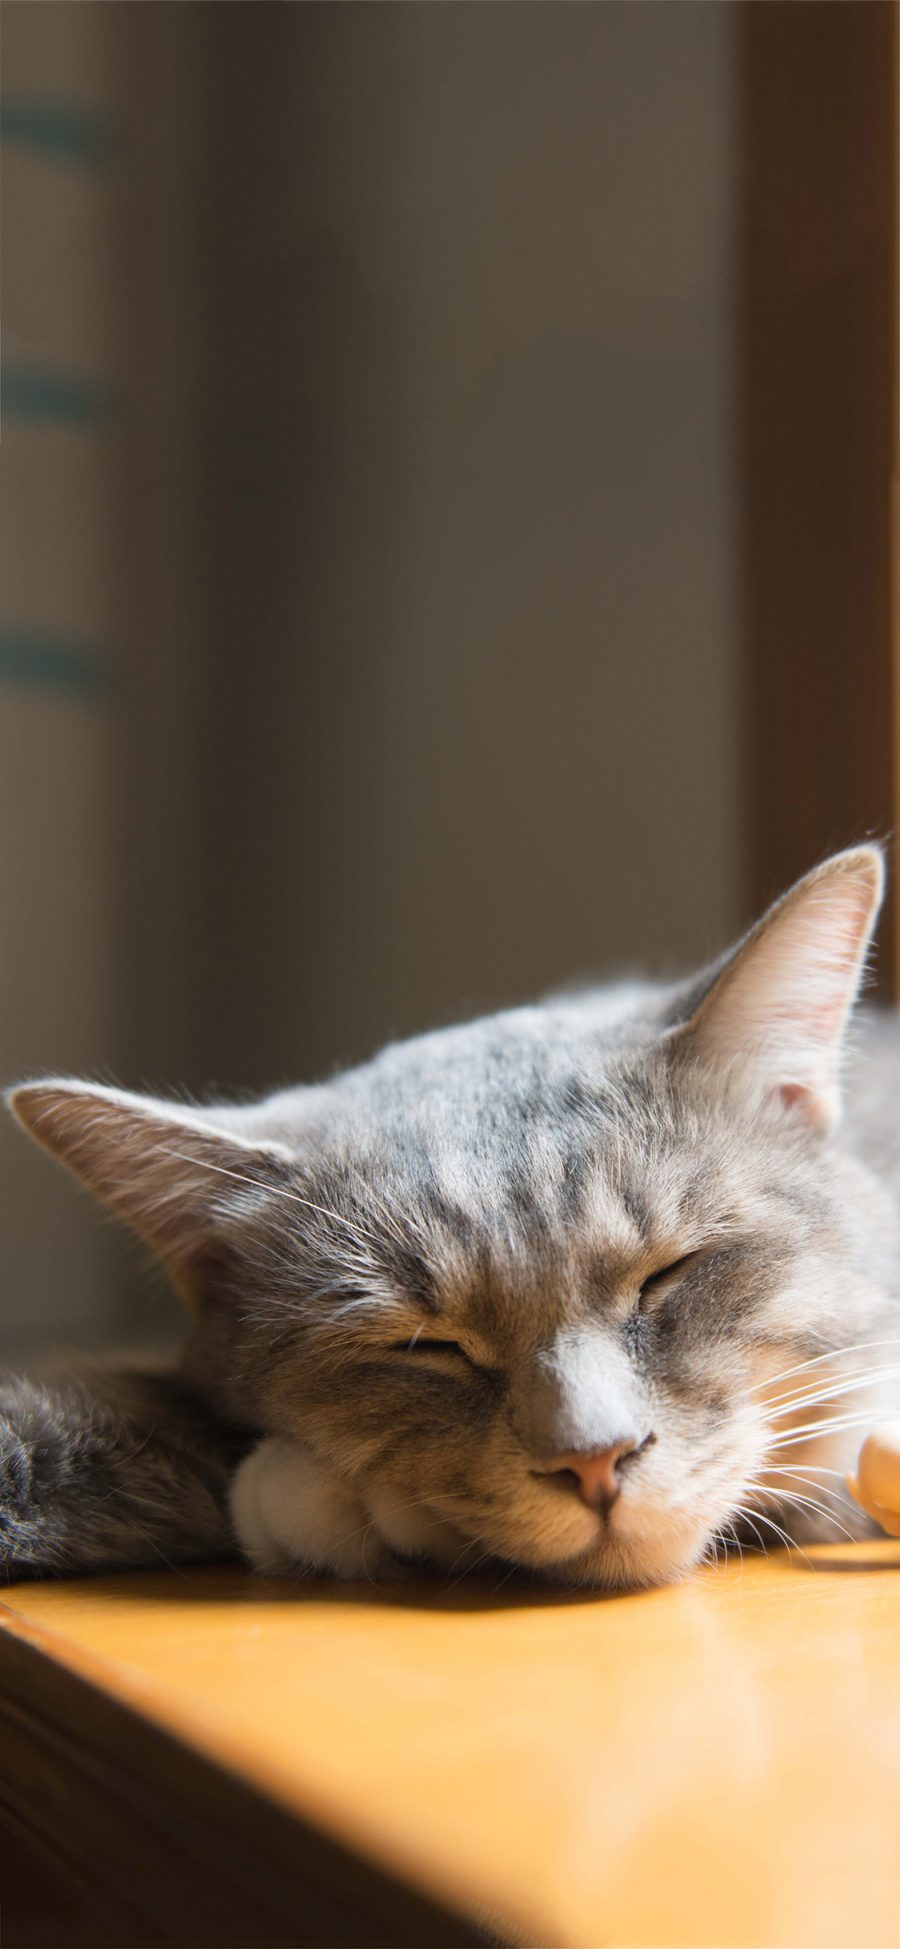 [2436×1125]喵星人 宠物猫 睡觉 慵懒 苹果手机壁纸图片